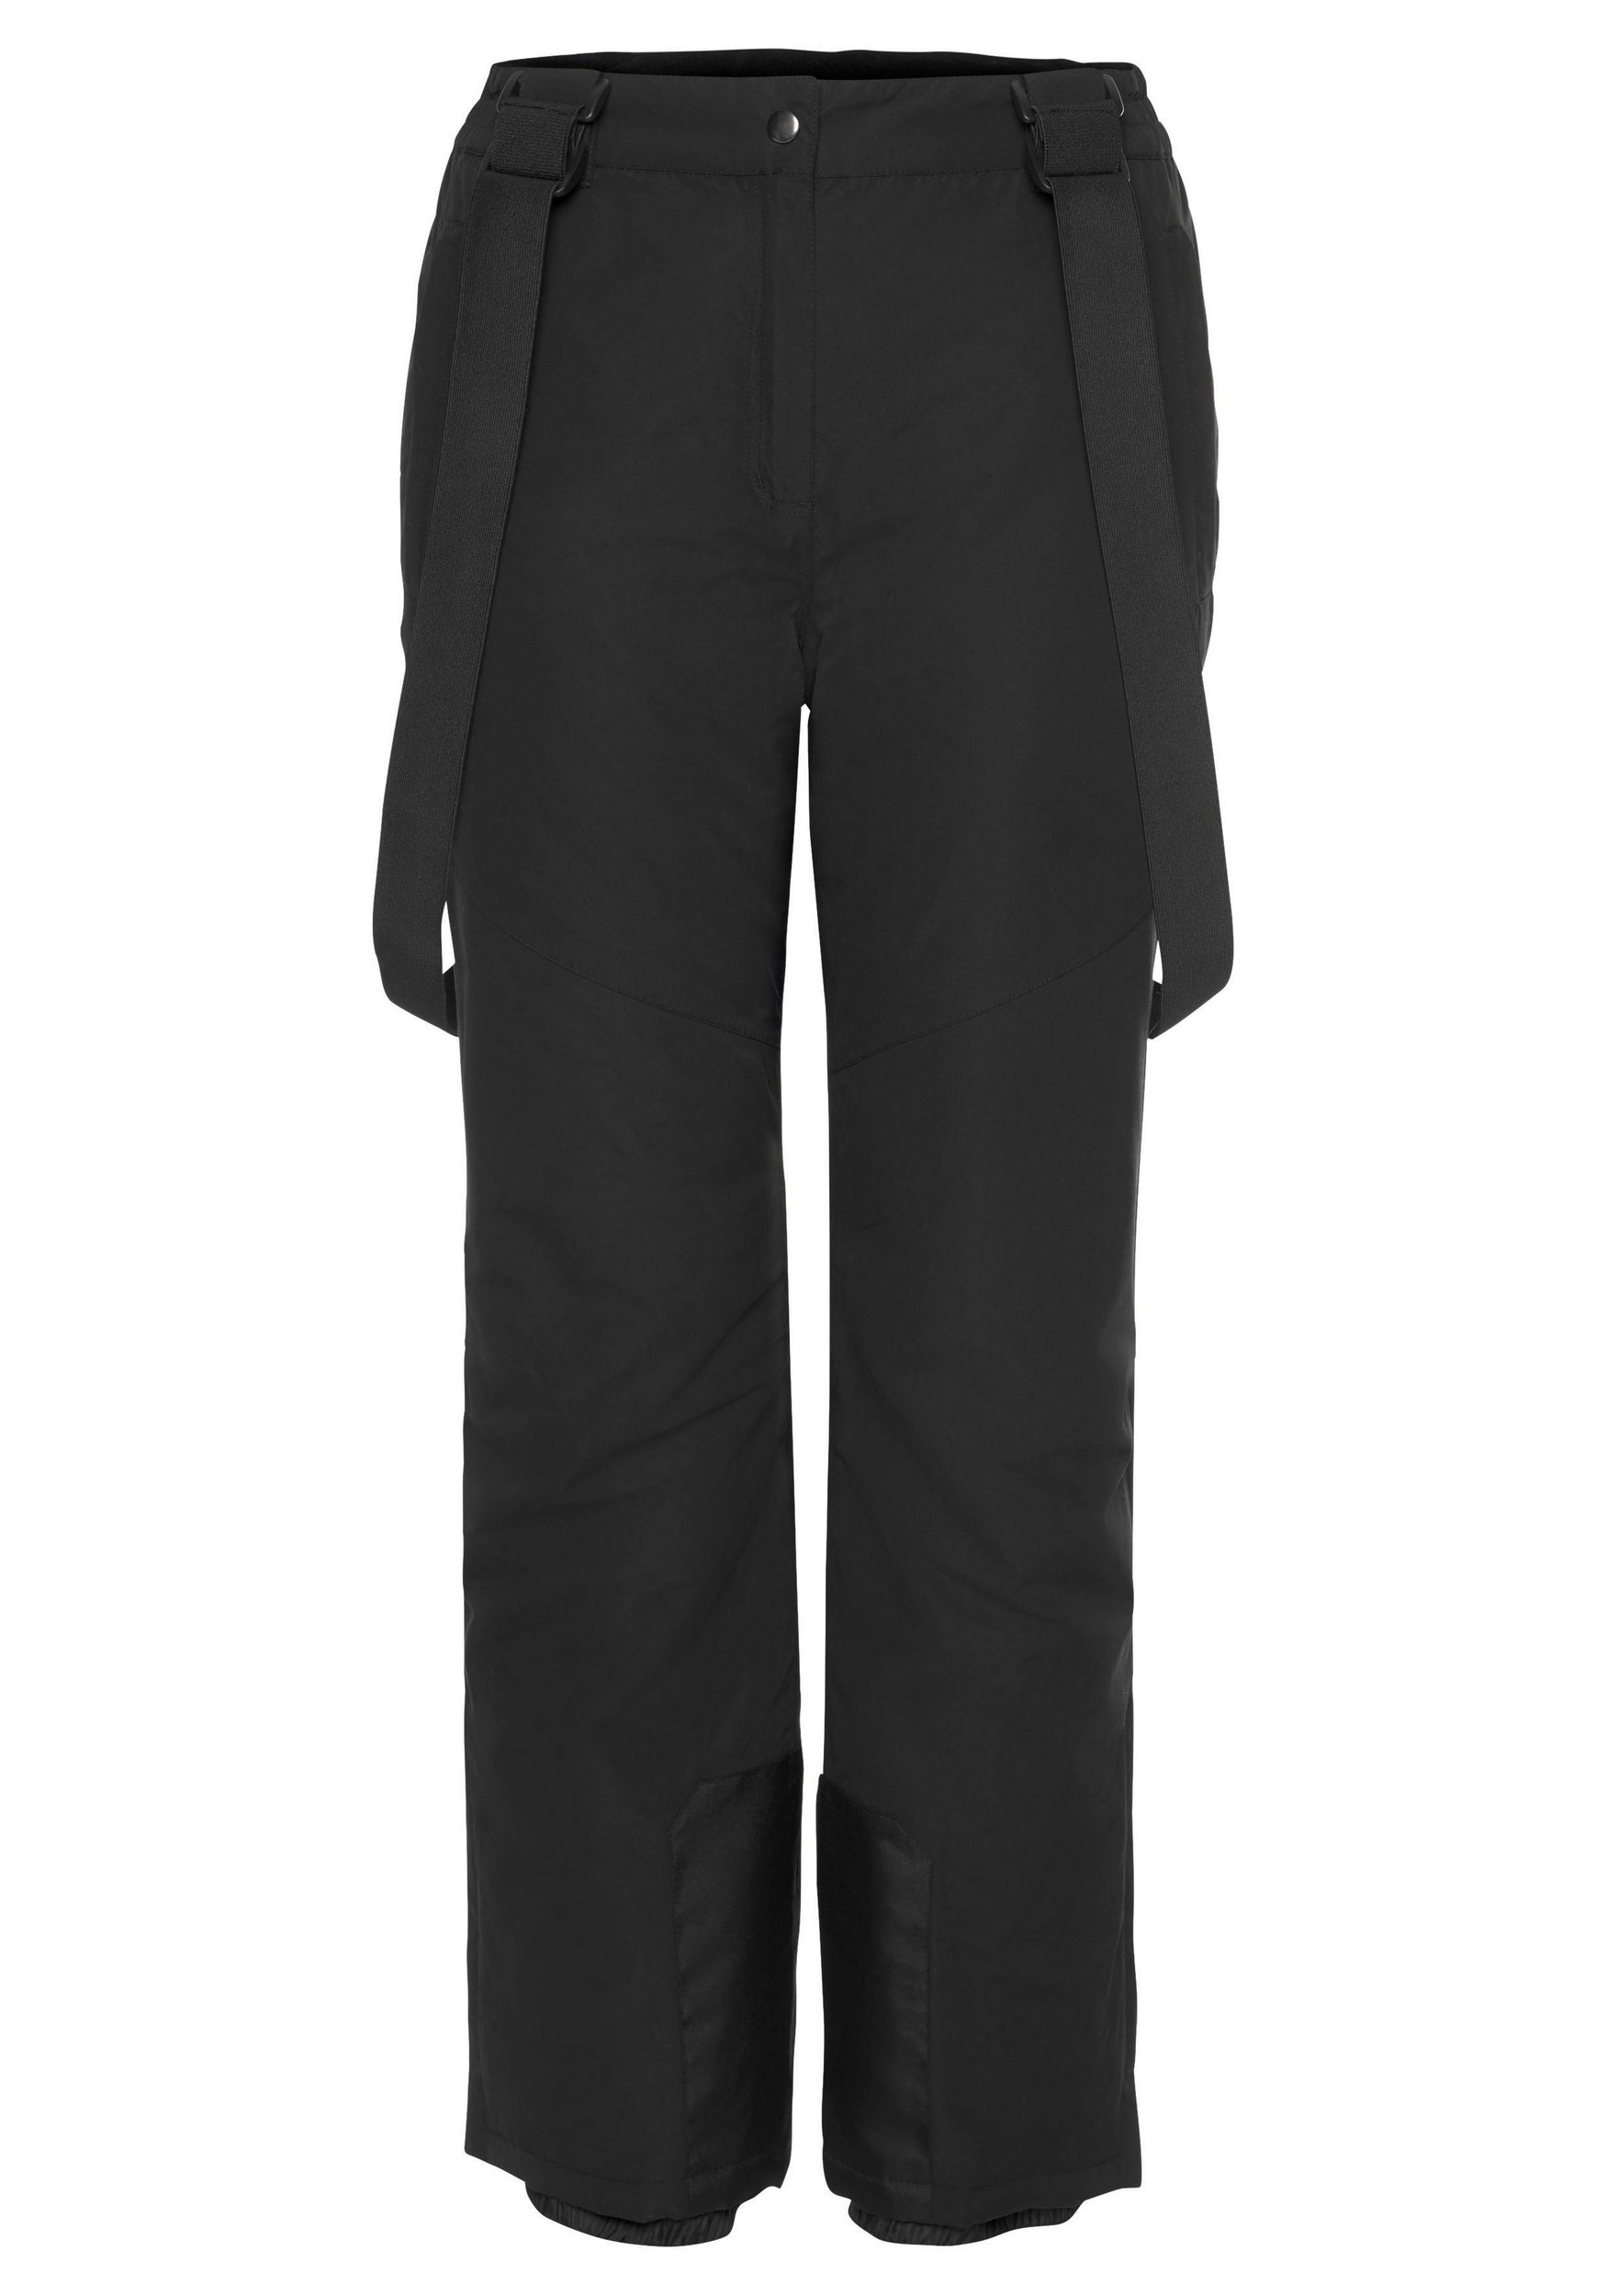 jiná značka EASTWIND lyžařské zateplené kalhoty Barva: Černá, Mezinárodní velikost: XL, EU velikost: 48